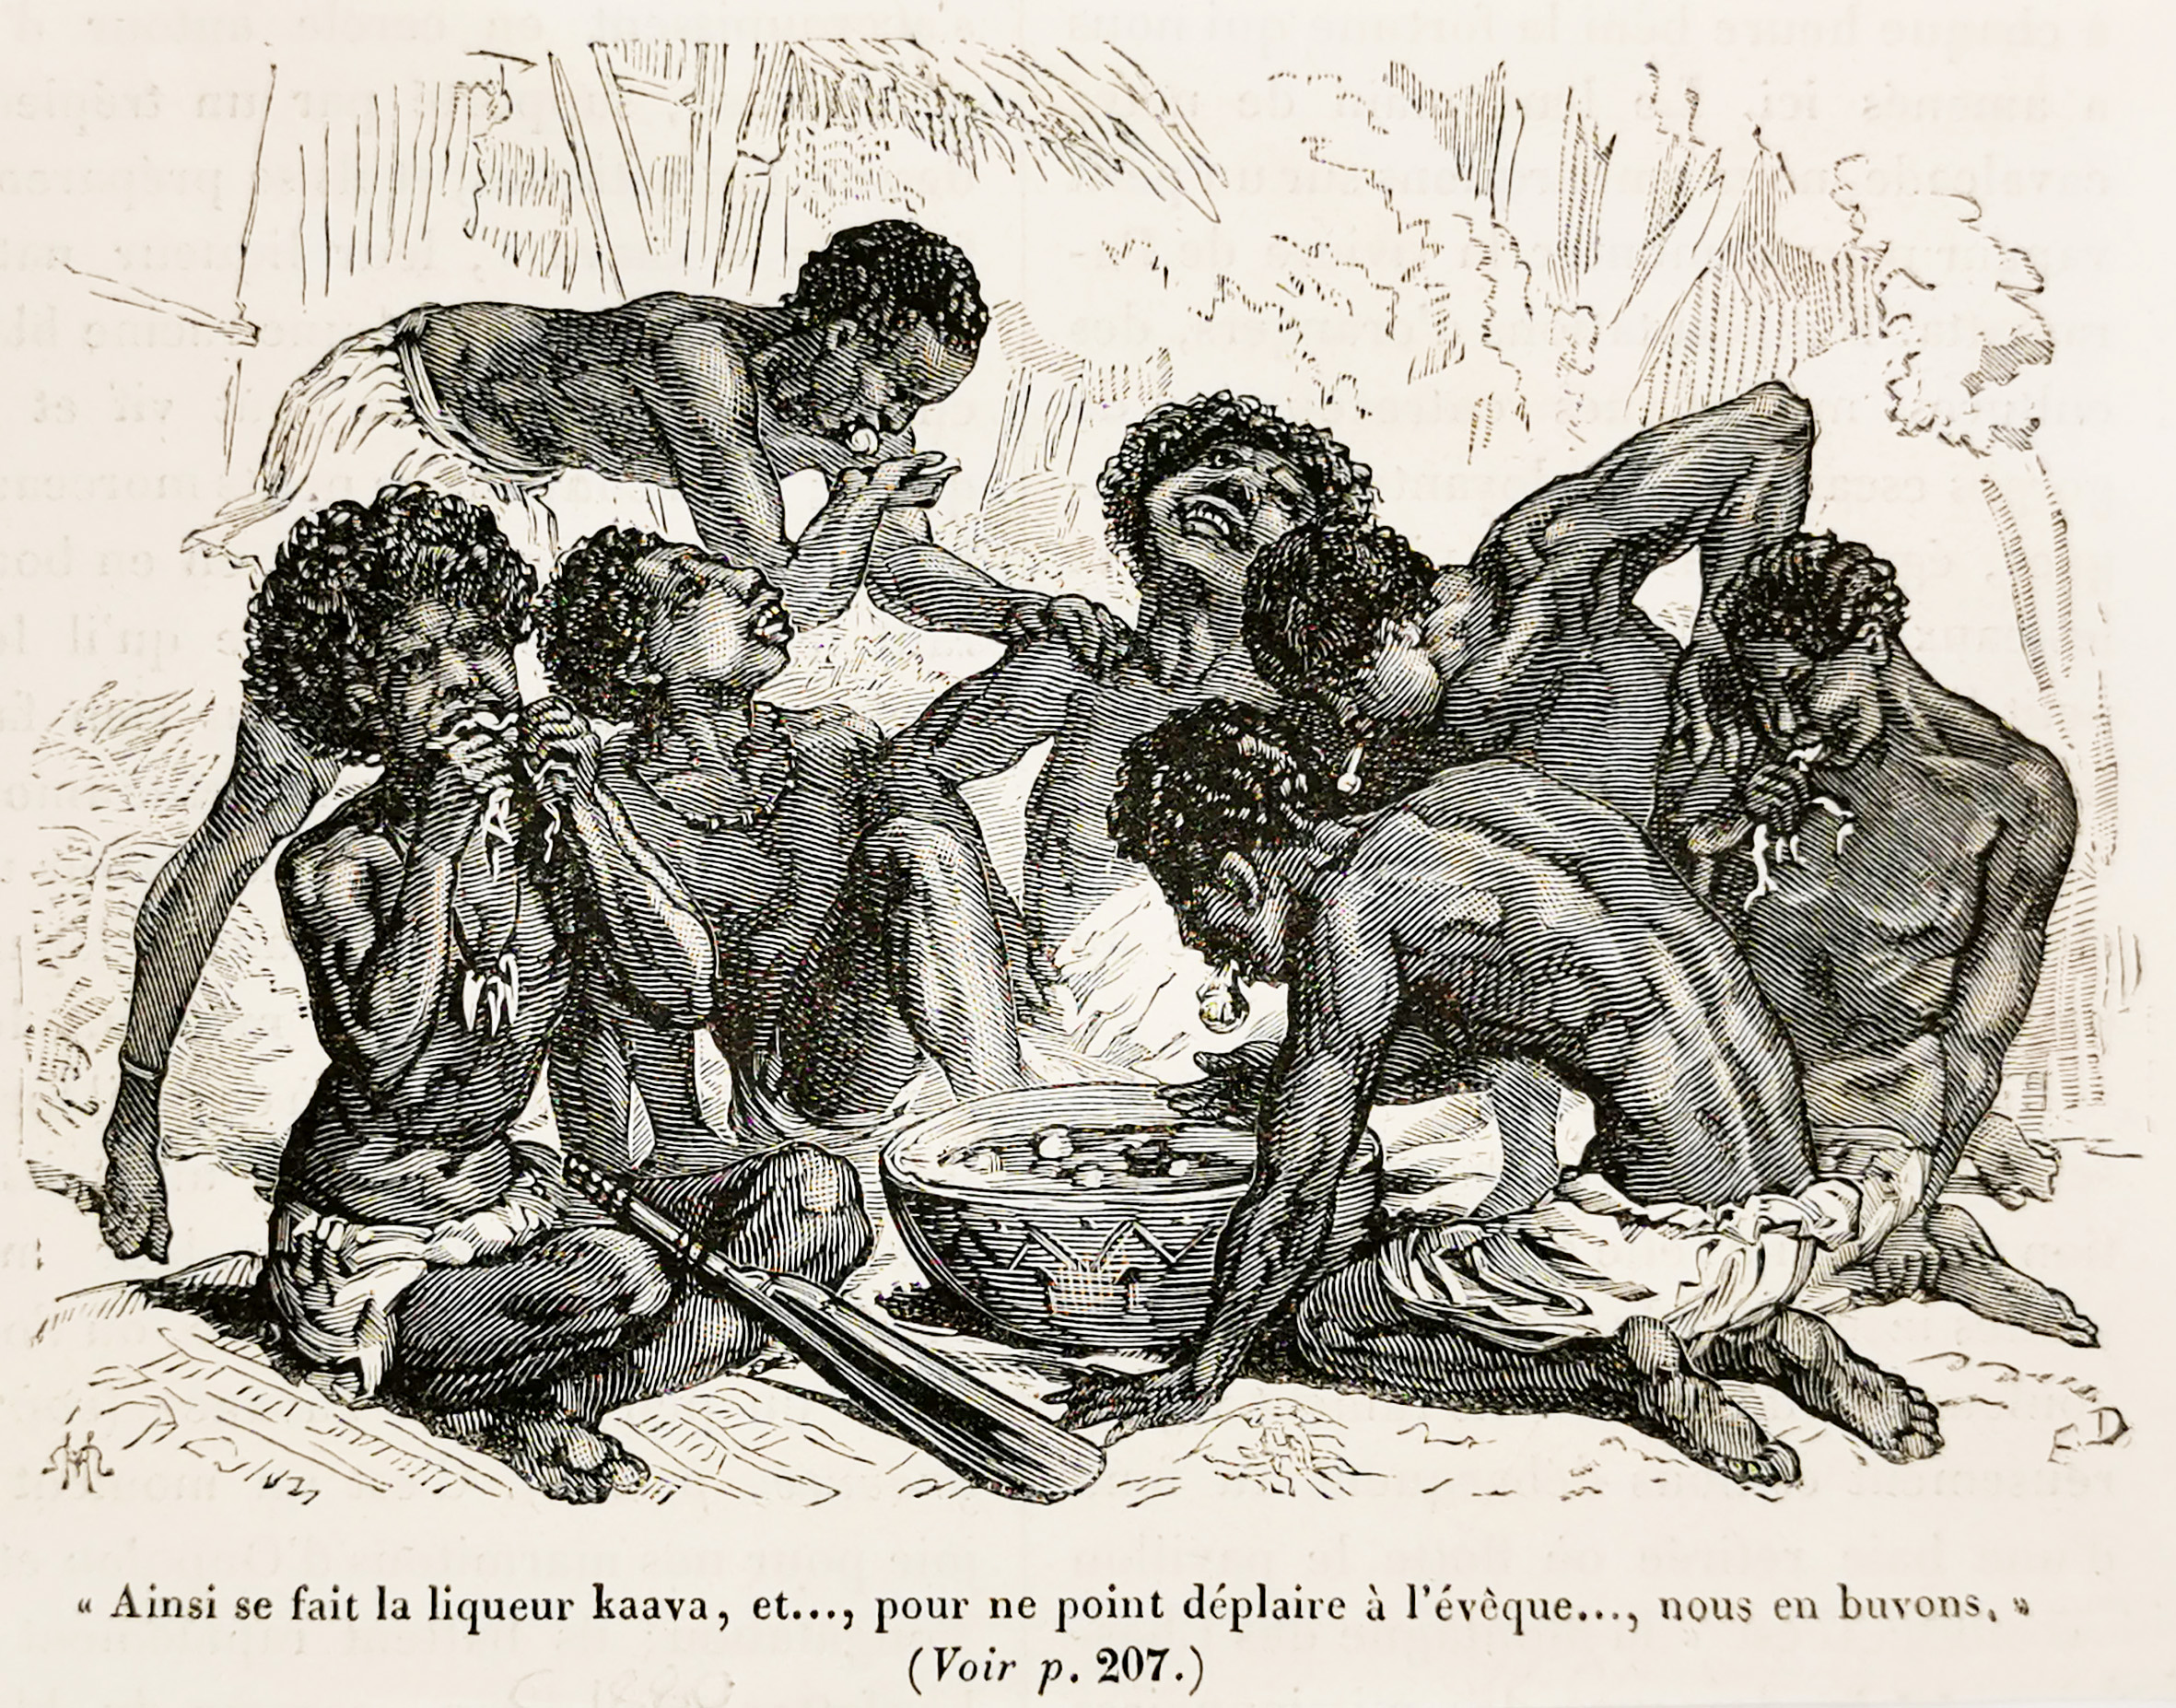 "Ainsi se fait la liqueur kaava, et..., pour ne point deplaire a l'eveque..., nous en buvons." - Antique Print from 1880